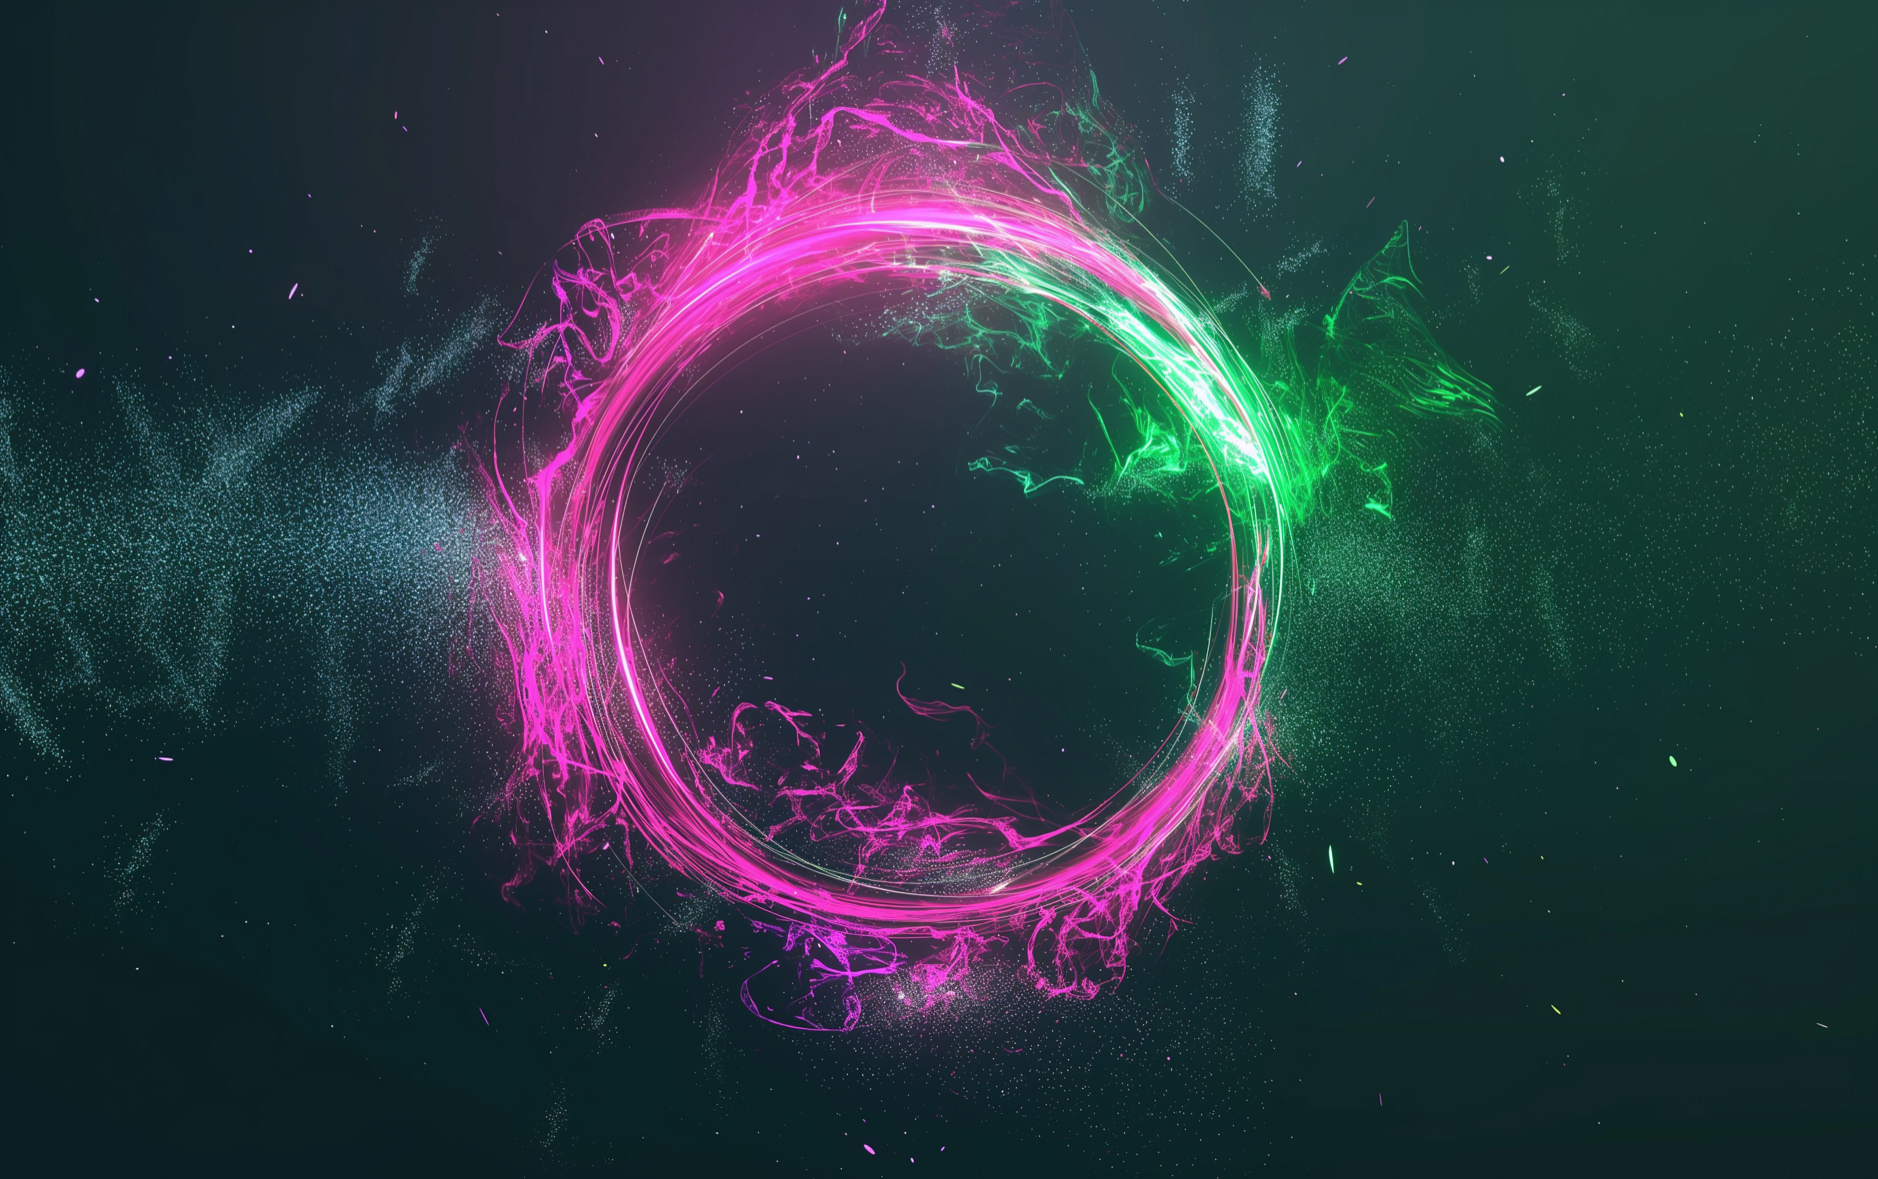 Das Bild zeigt einen leuchtenden, abstrakten Energiestrom in Pink und Grün, der sich wirbelnd gegen einen nächtlichen, sternbesäten Hintergrund abhebt. Es vermittelt den Eindruck einer dynamischen, kosmischen Szene.